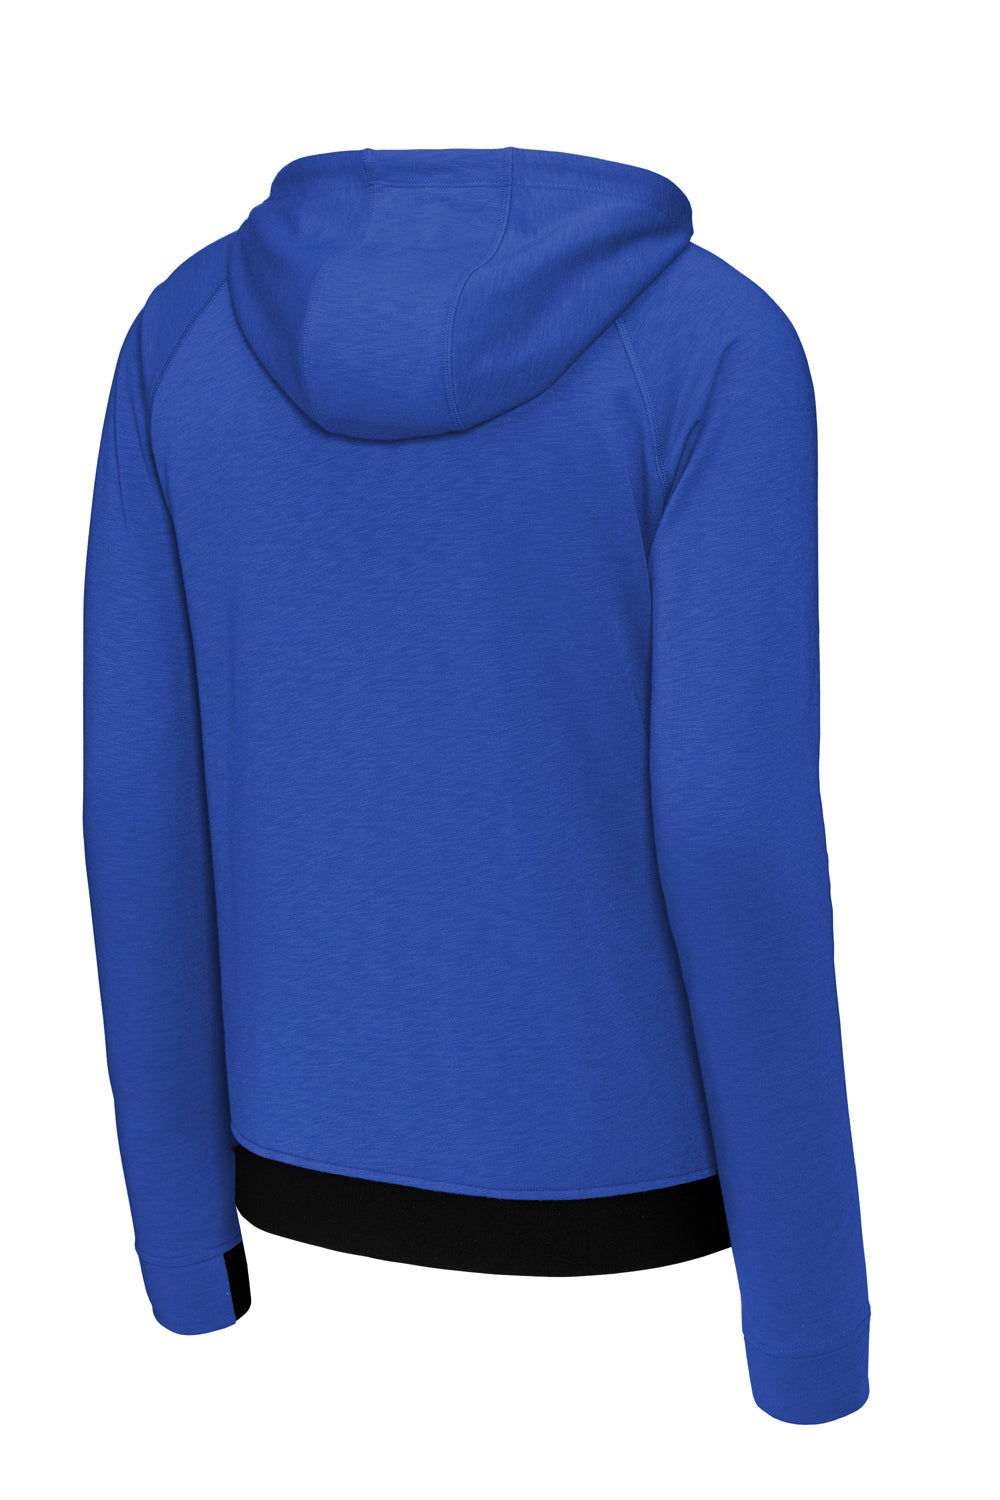 Sport-Tek ST570 Strive PosiCharge Full Zip Hooded Sweatshirt Hoodie True Royal Blue Flat Back